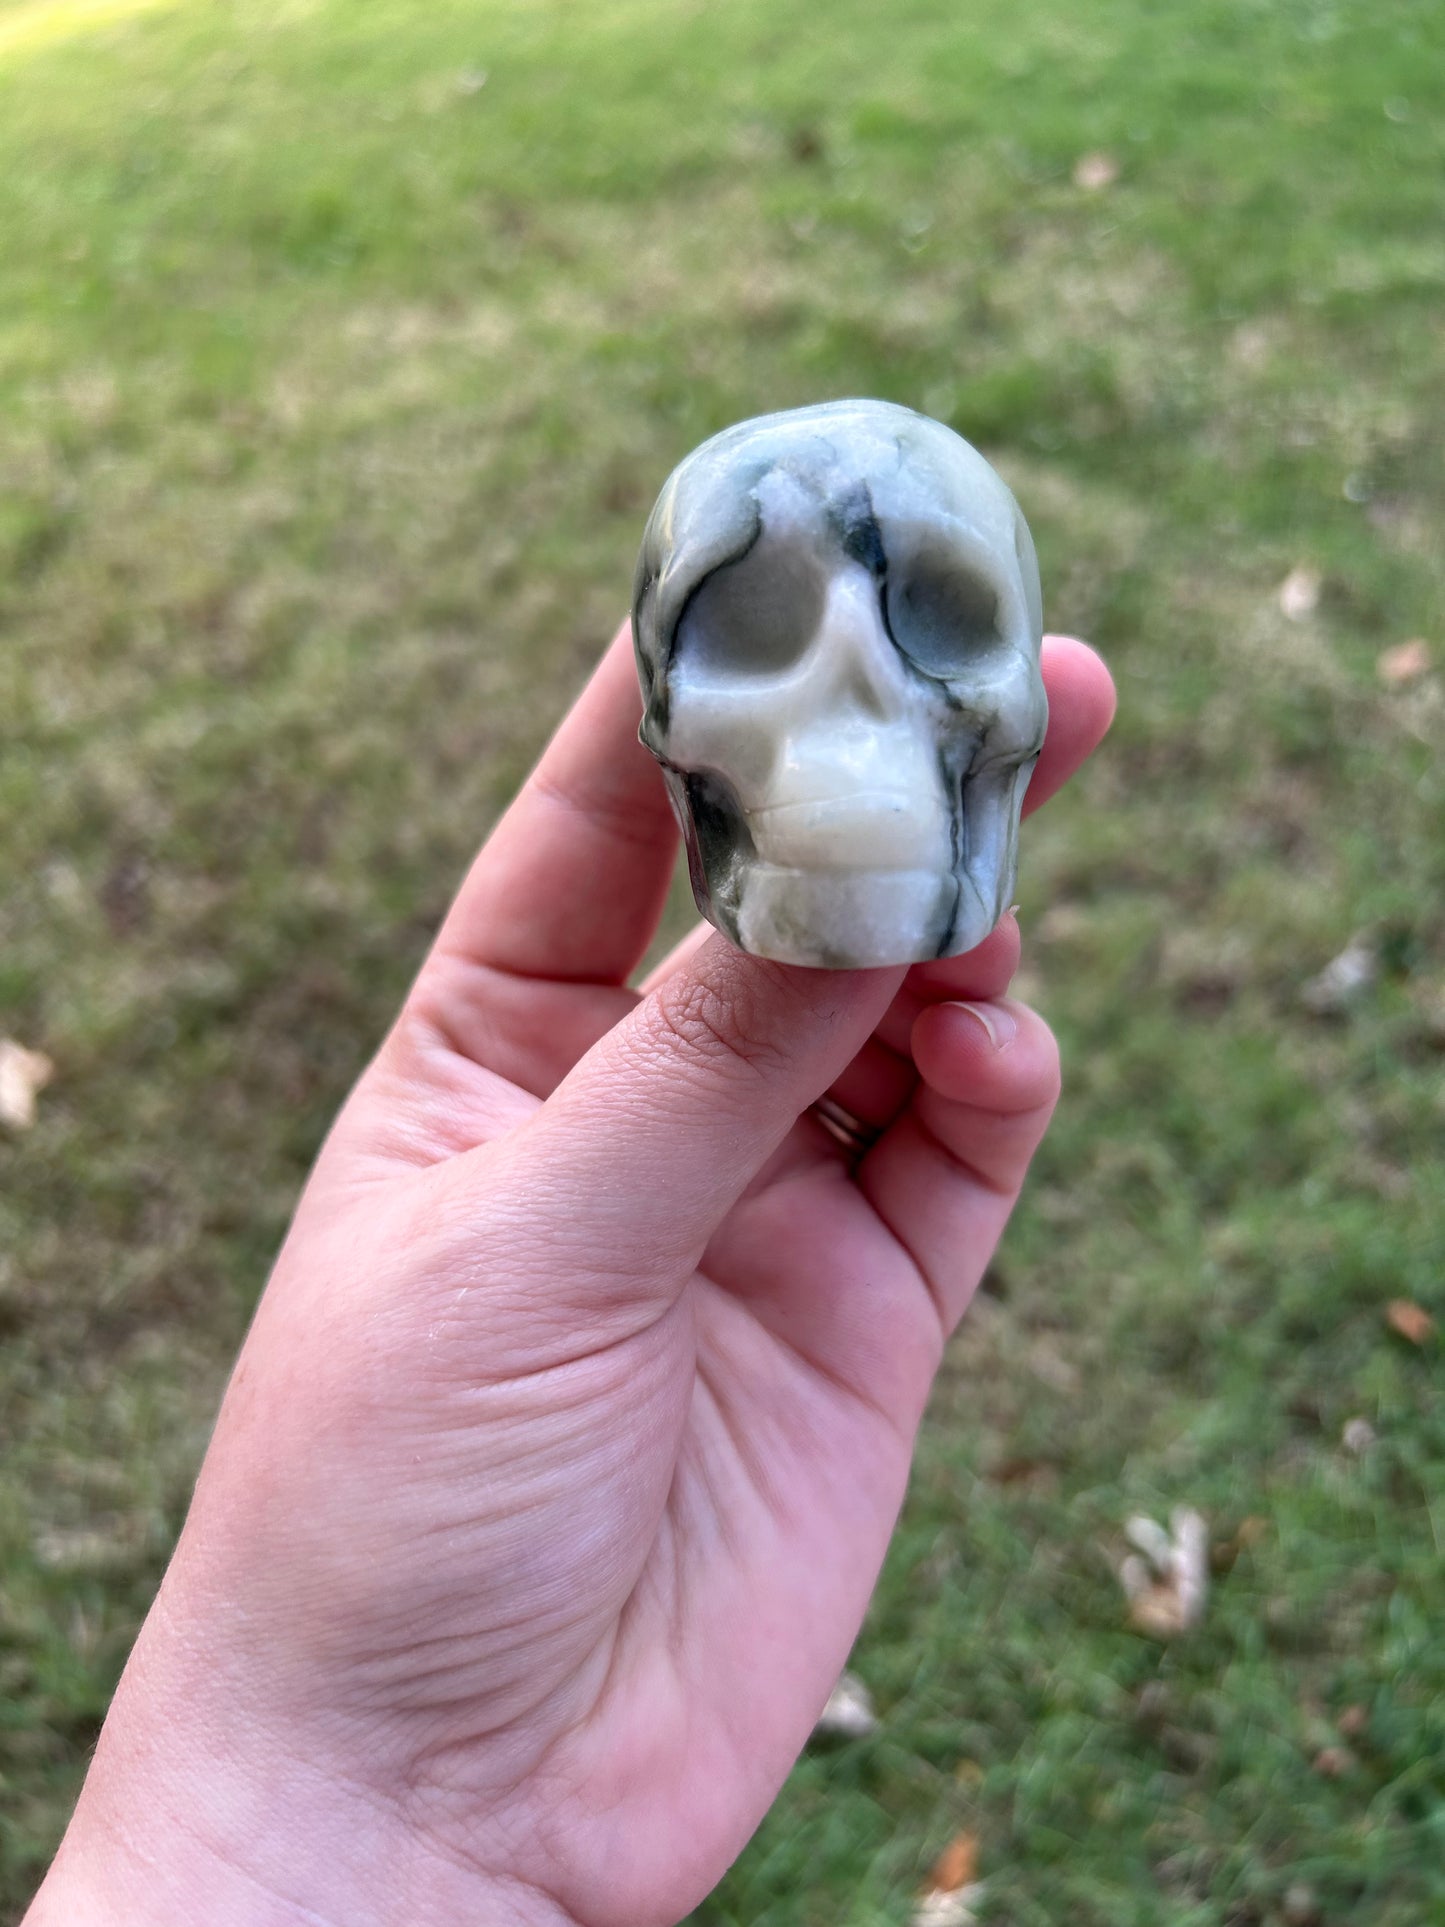 Serpentine Jade Skull